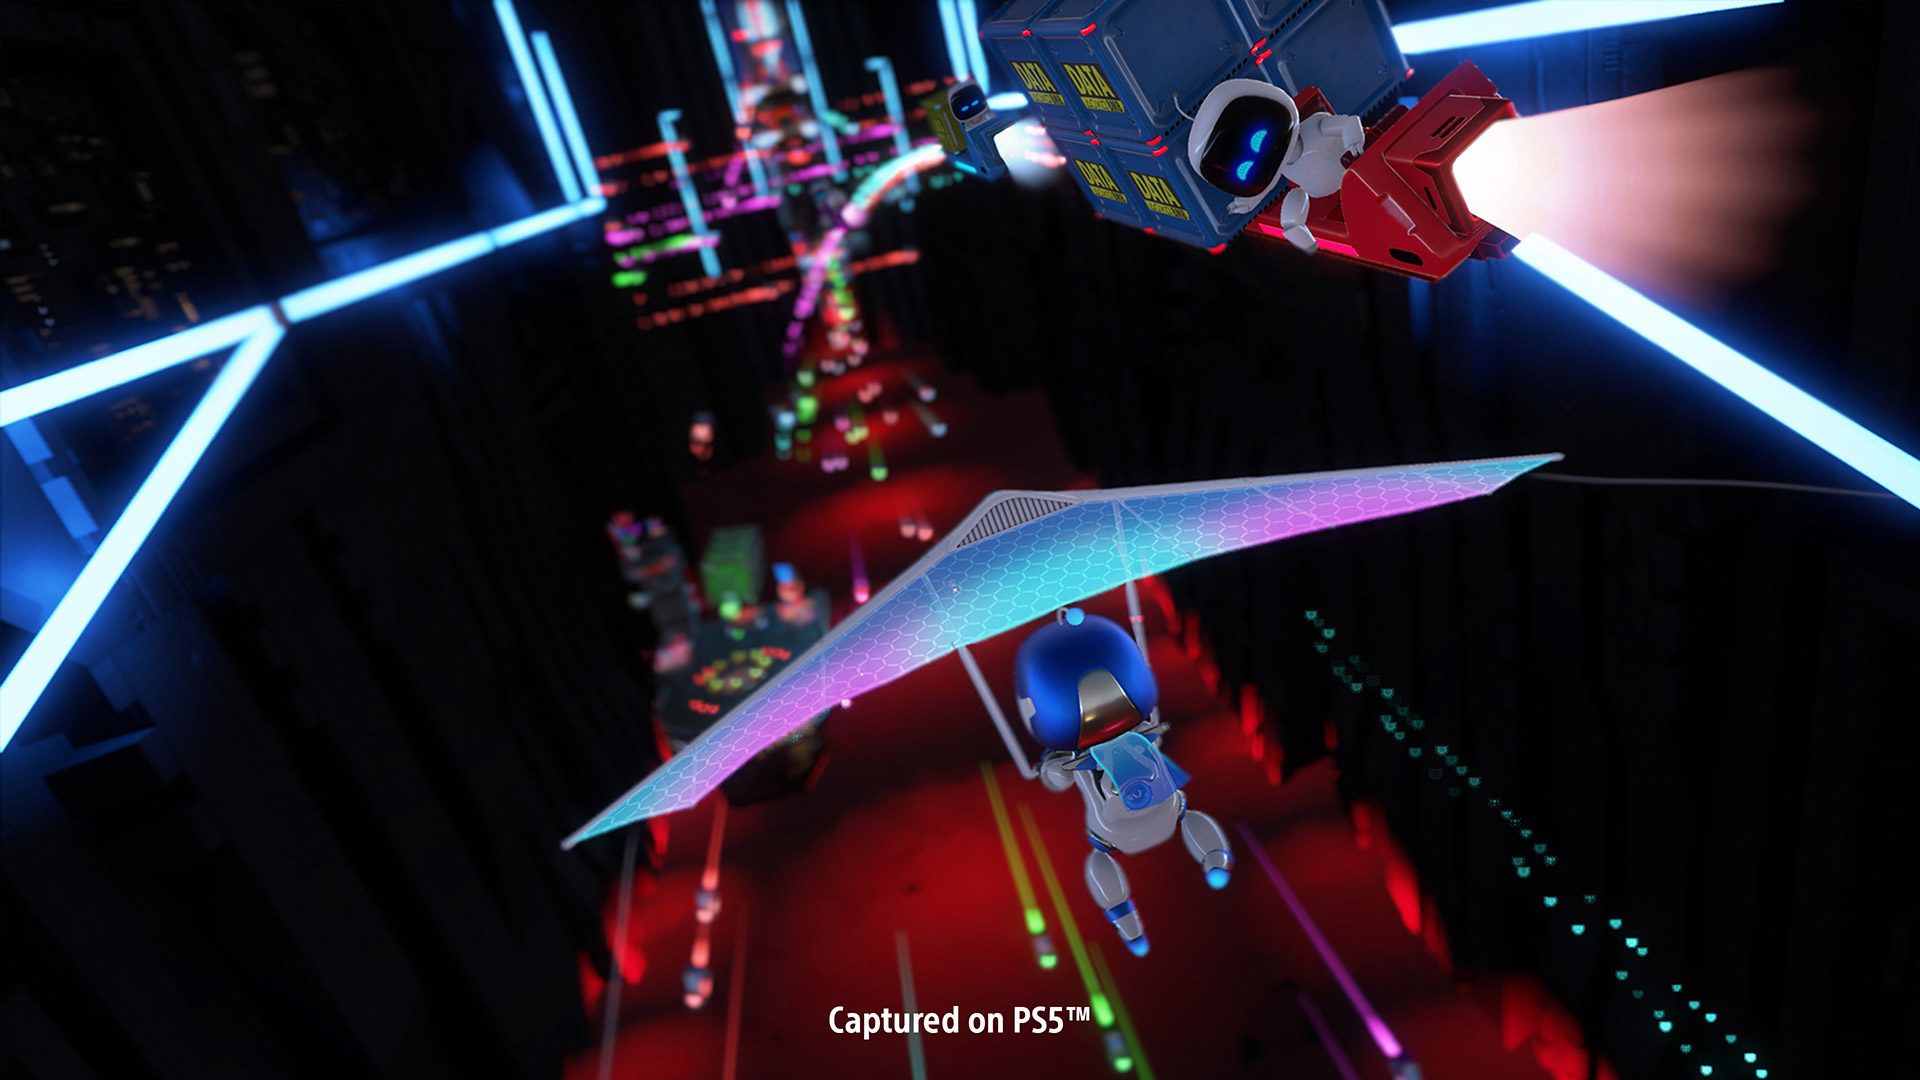 Astro’s Playroom PS5 скачать бесплатно обои постеры прохождение игромультфильм 2020